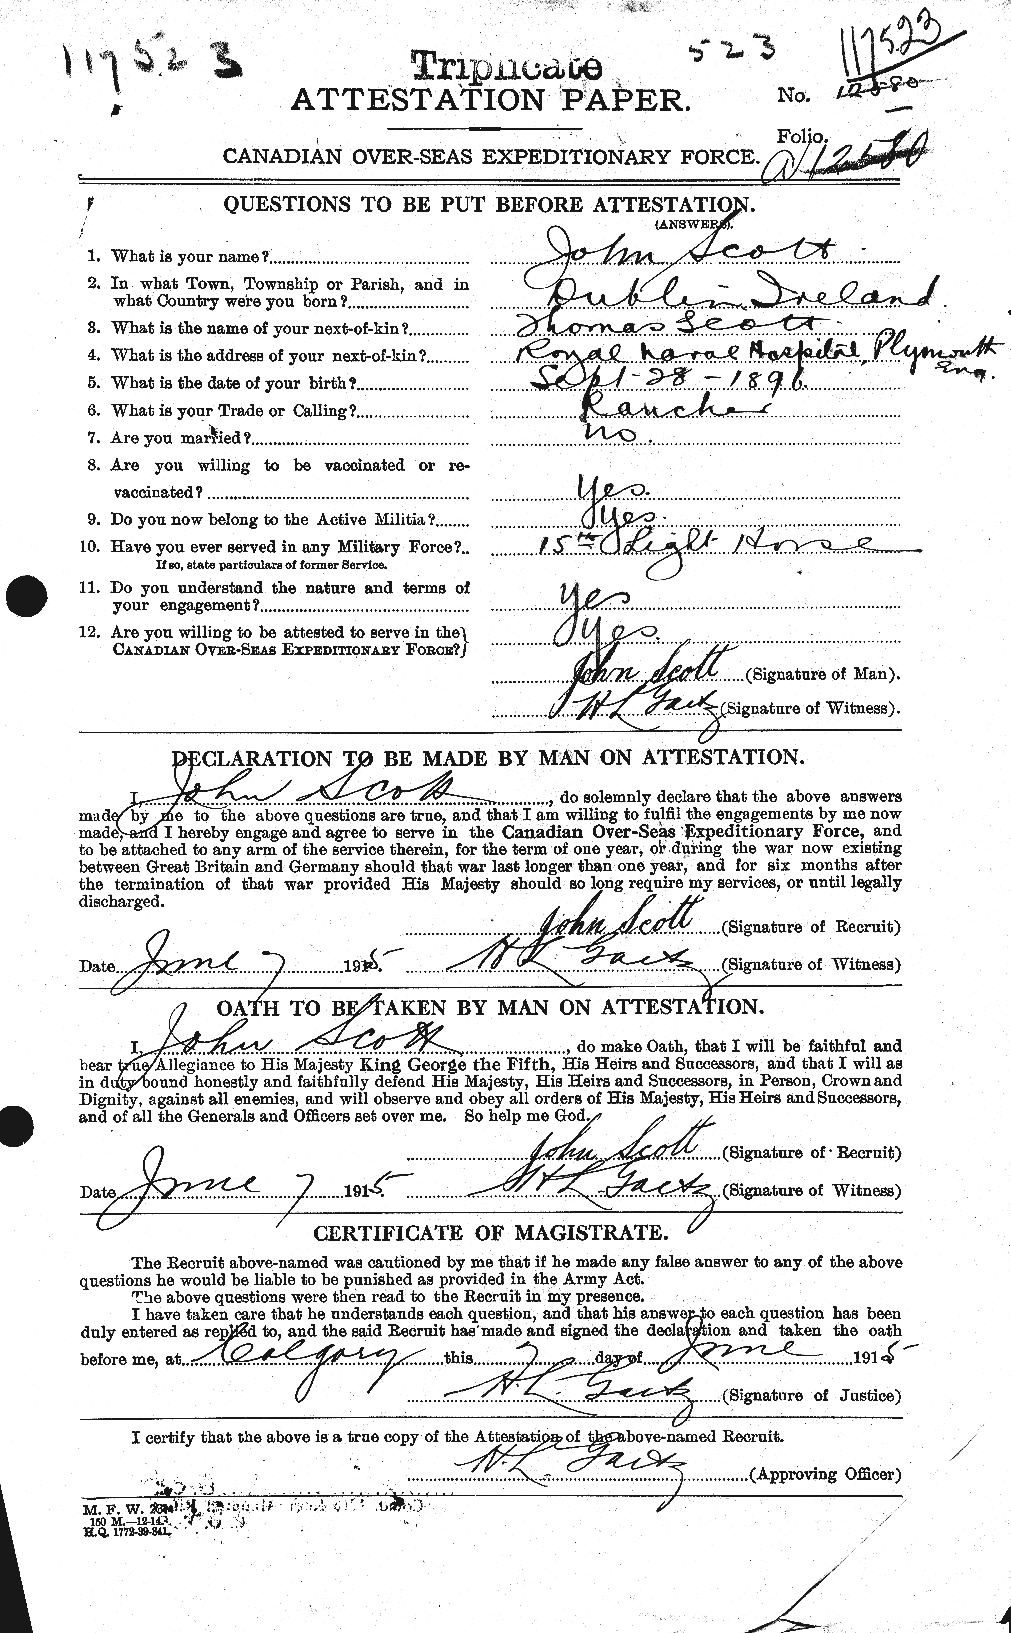 Dossiers du Personnel de la Première Guerre mondiale - CEC 084906a